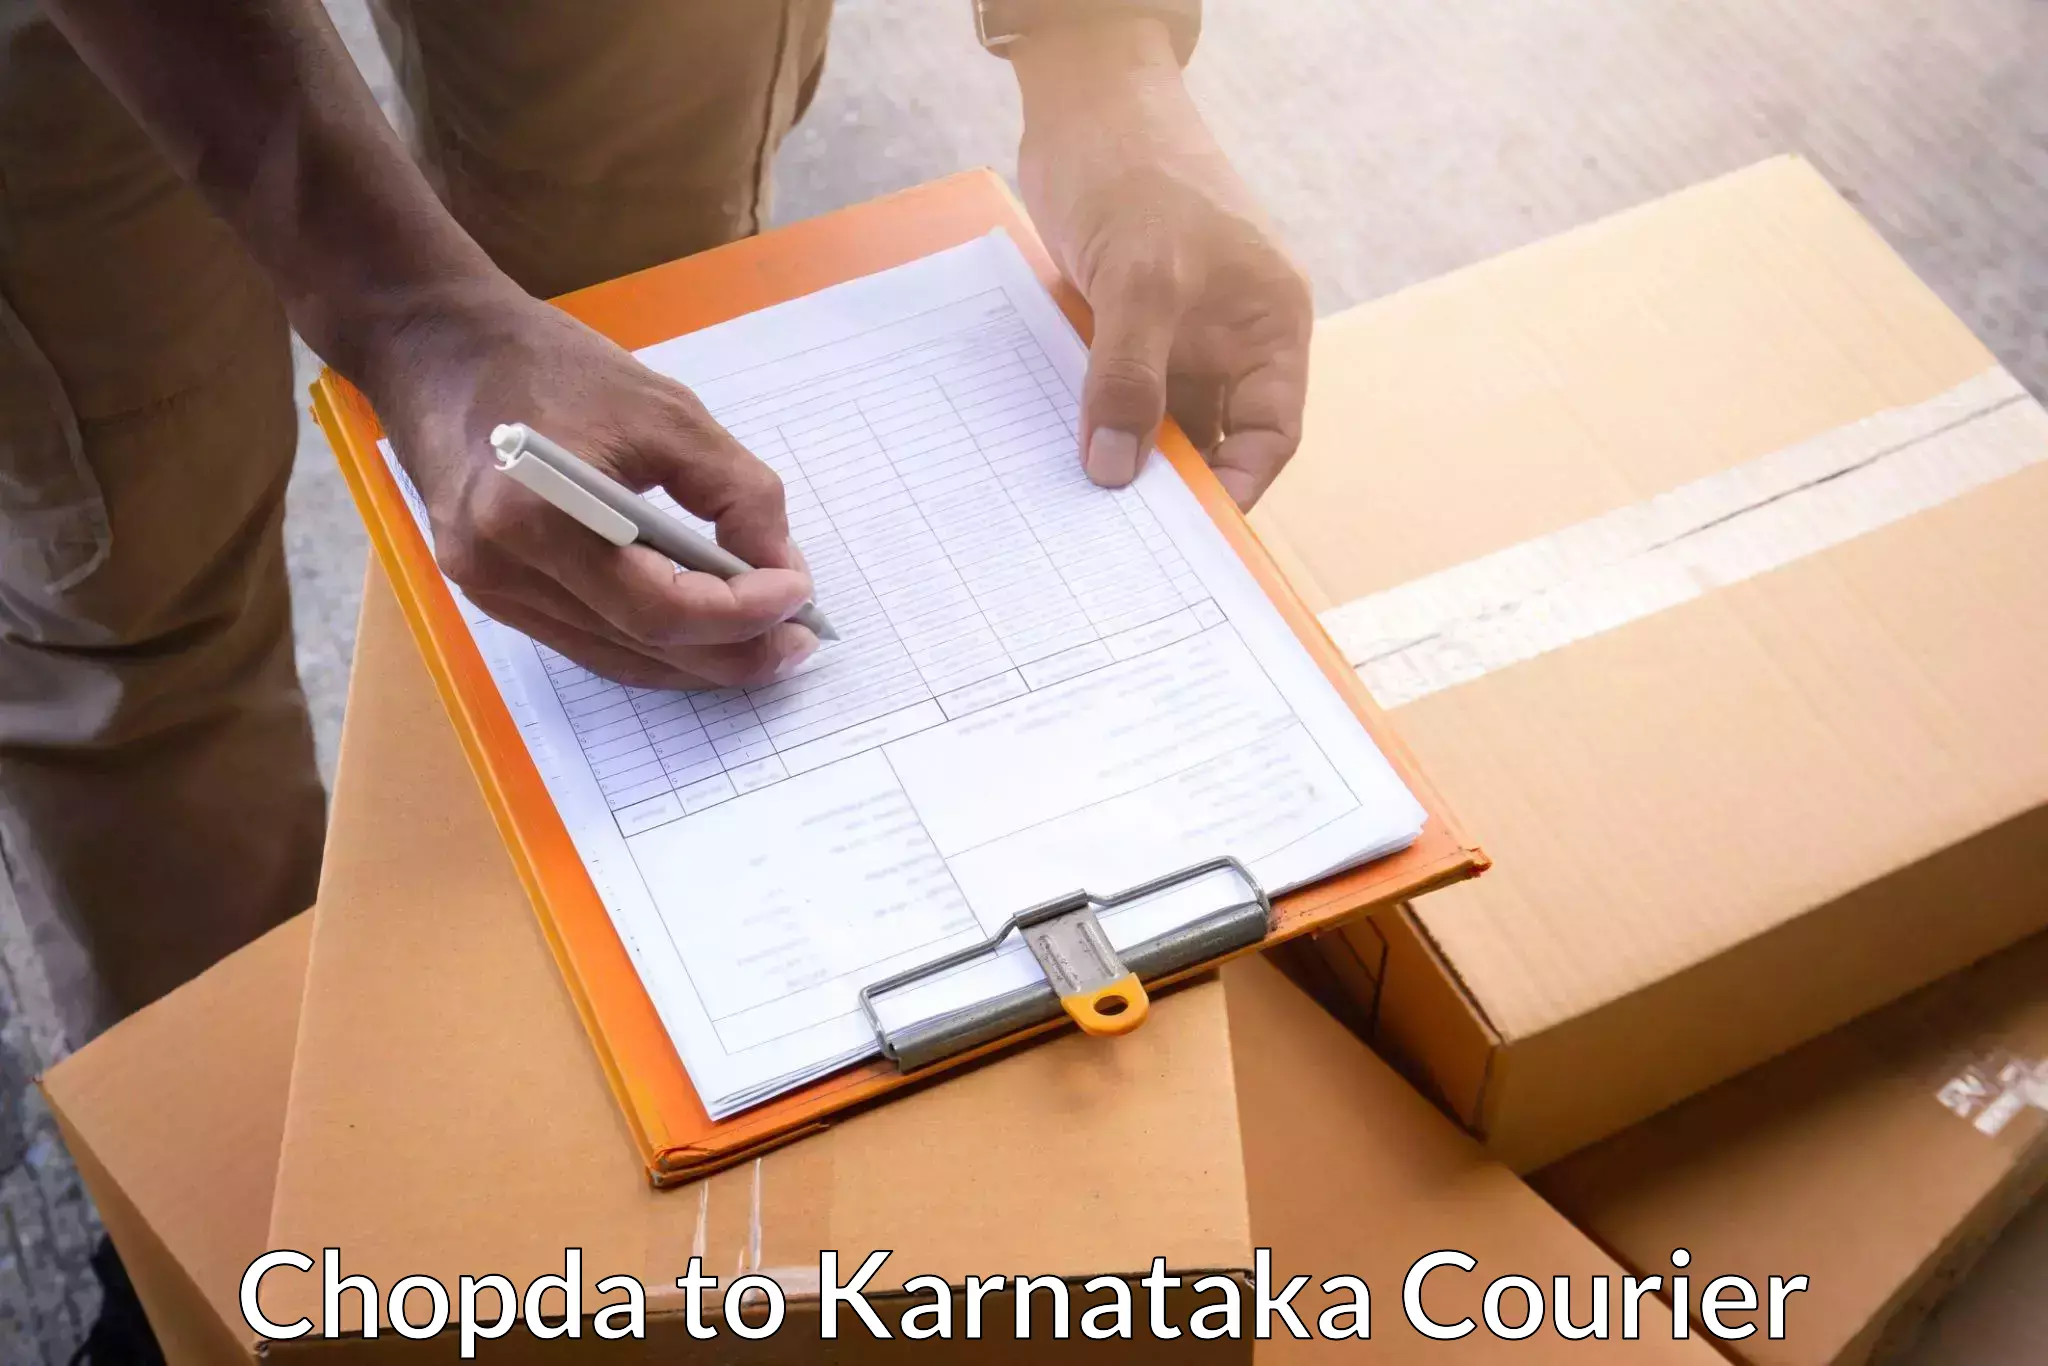 Express logistics providers Chopda to Kittur